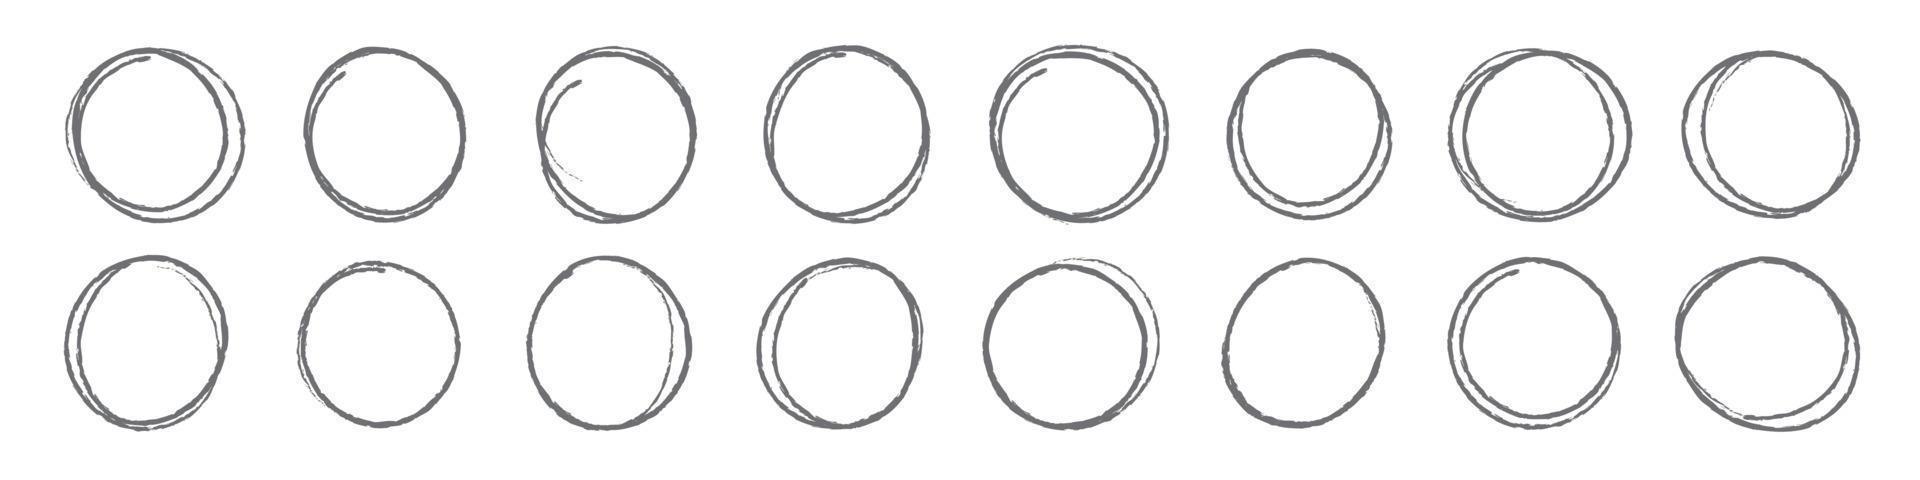 conjunto de moldura de esboço de círculos desenhados à mão, ovais de caneta de feltro. doodle elementos de moldura circular ilustração vetorial isolada vetor